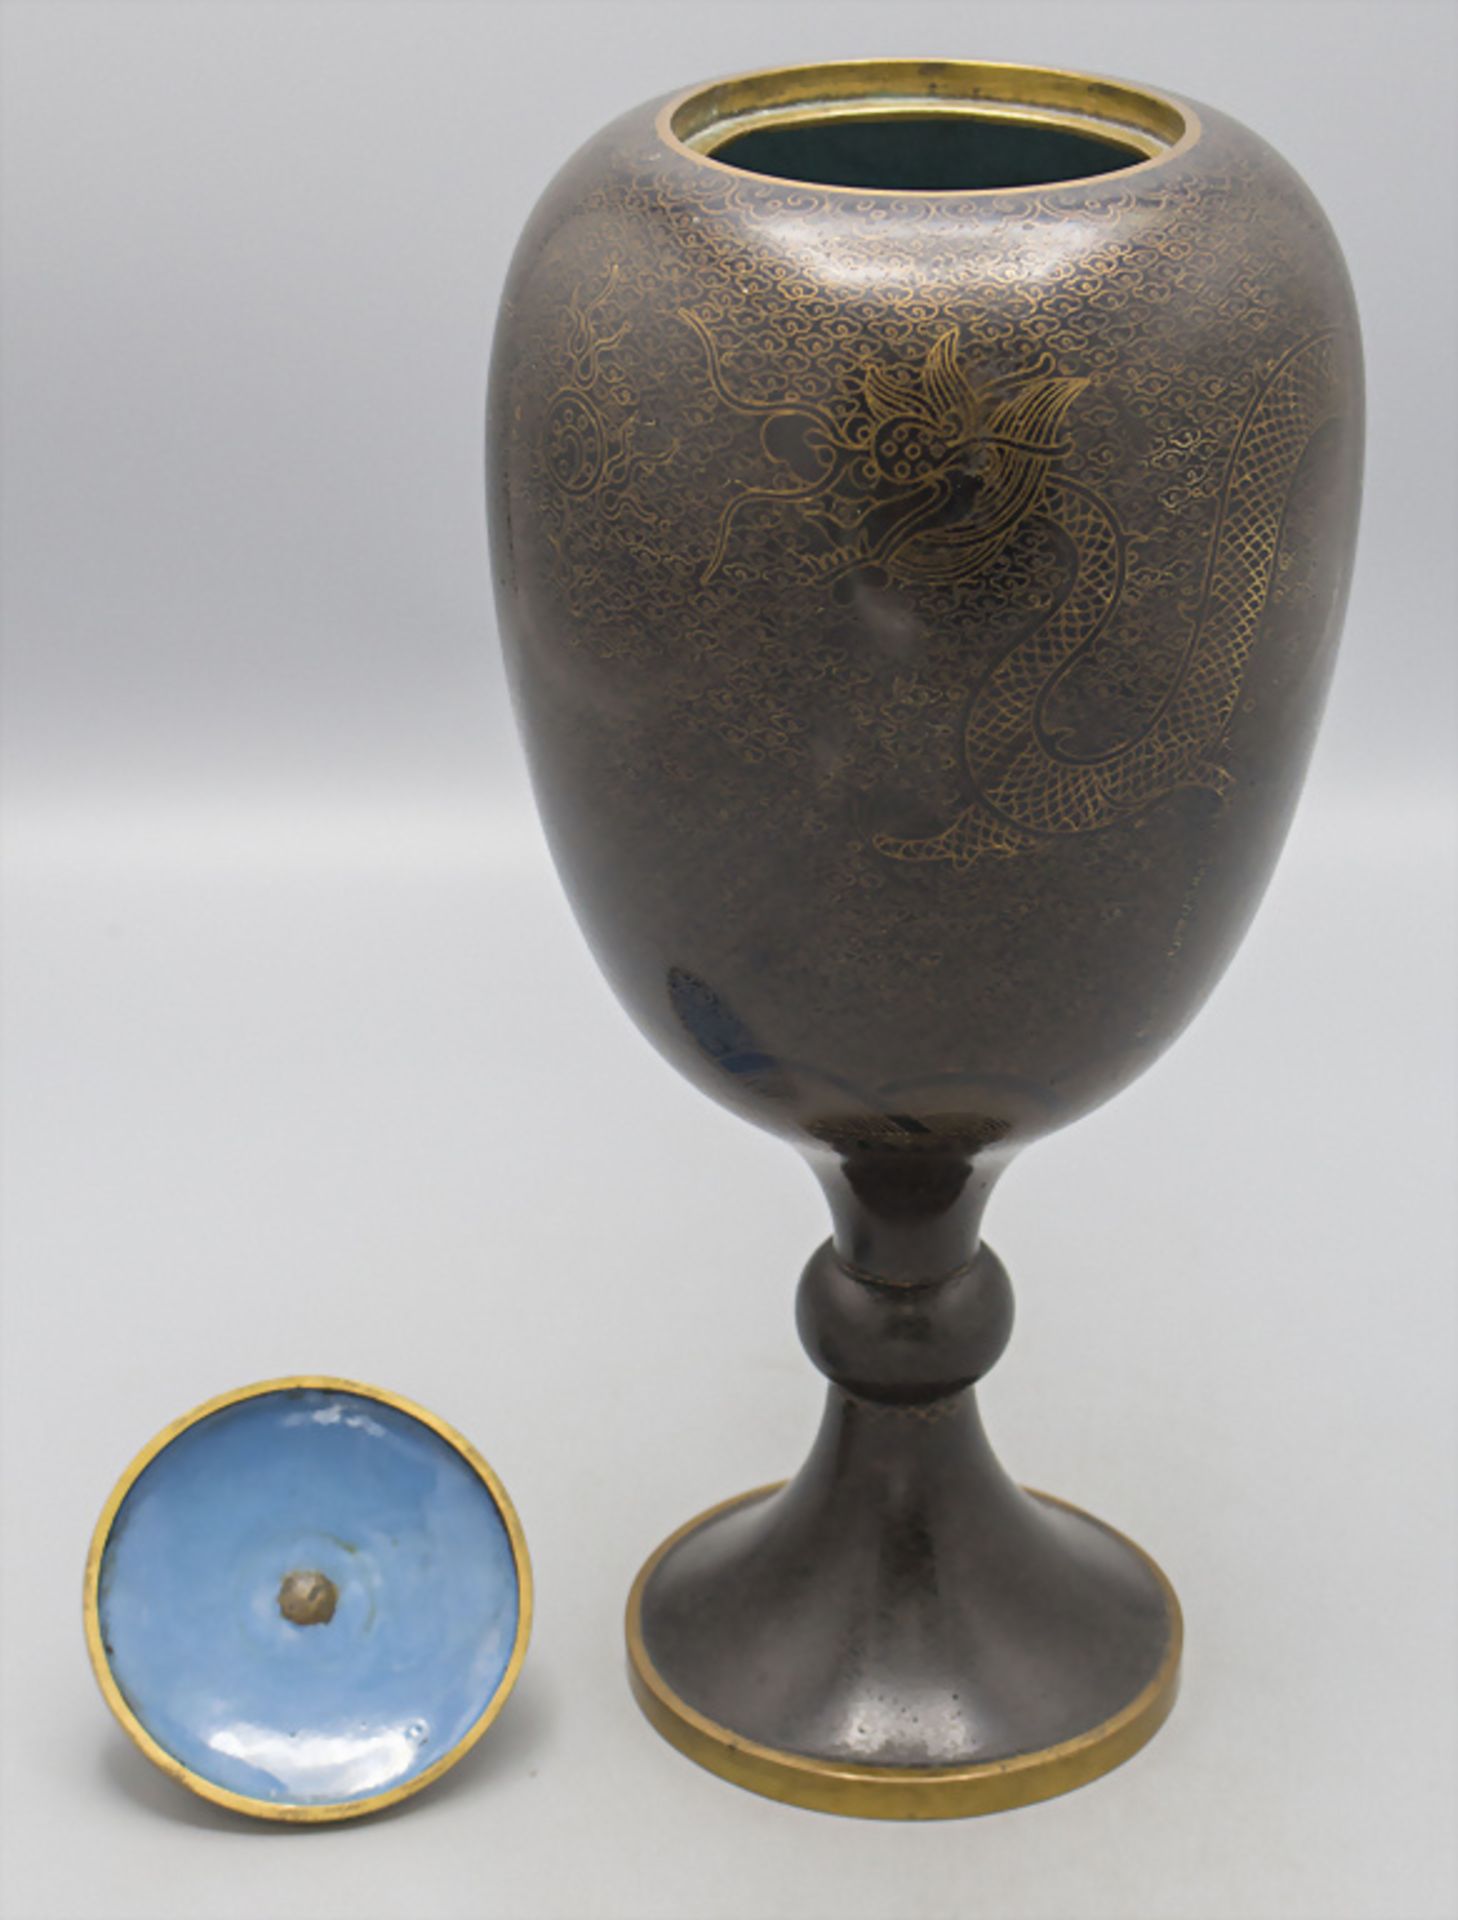 Cloisonné-Deckelvase / A cloisonné lidded vase, China, späte Qing Dynastie (1644-1911) - Bild 2 aus 6